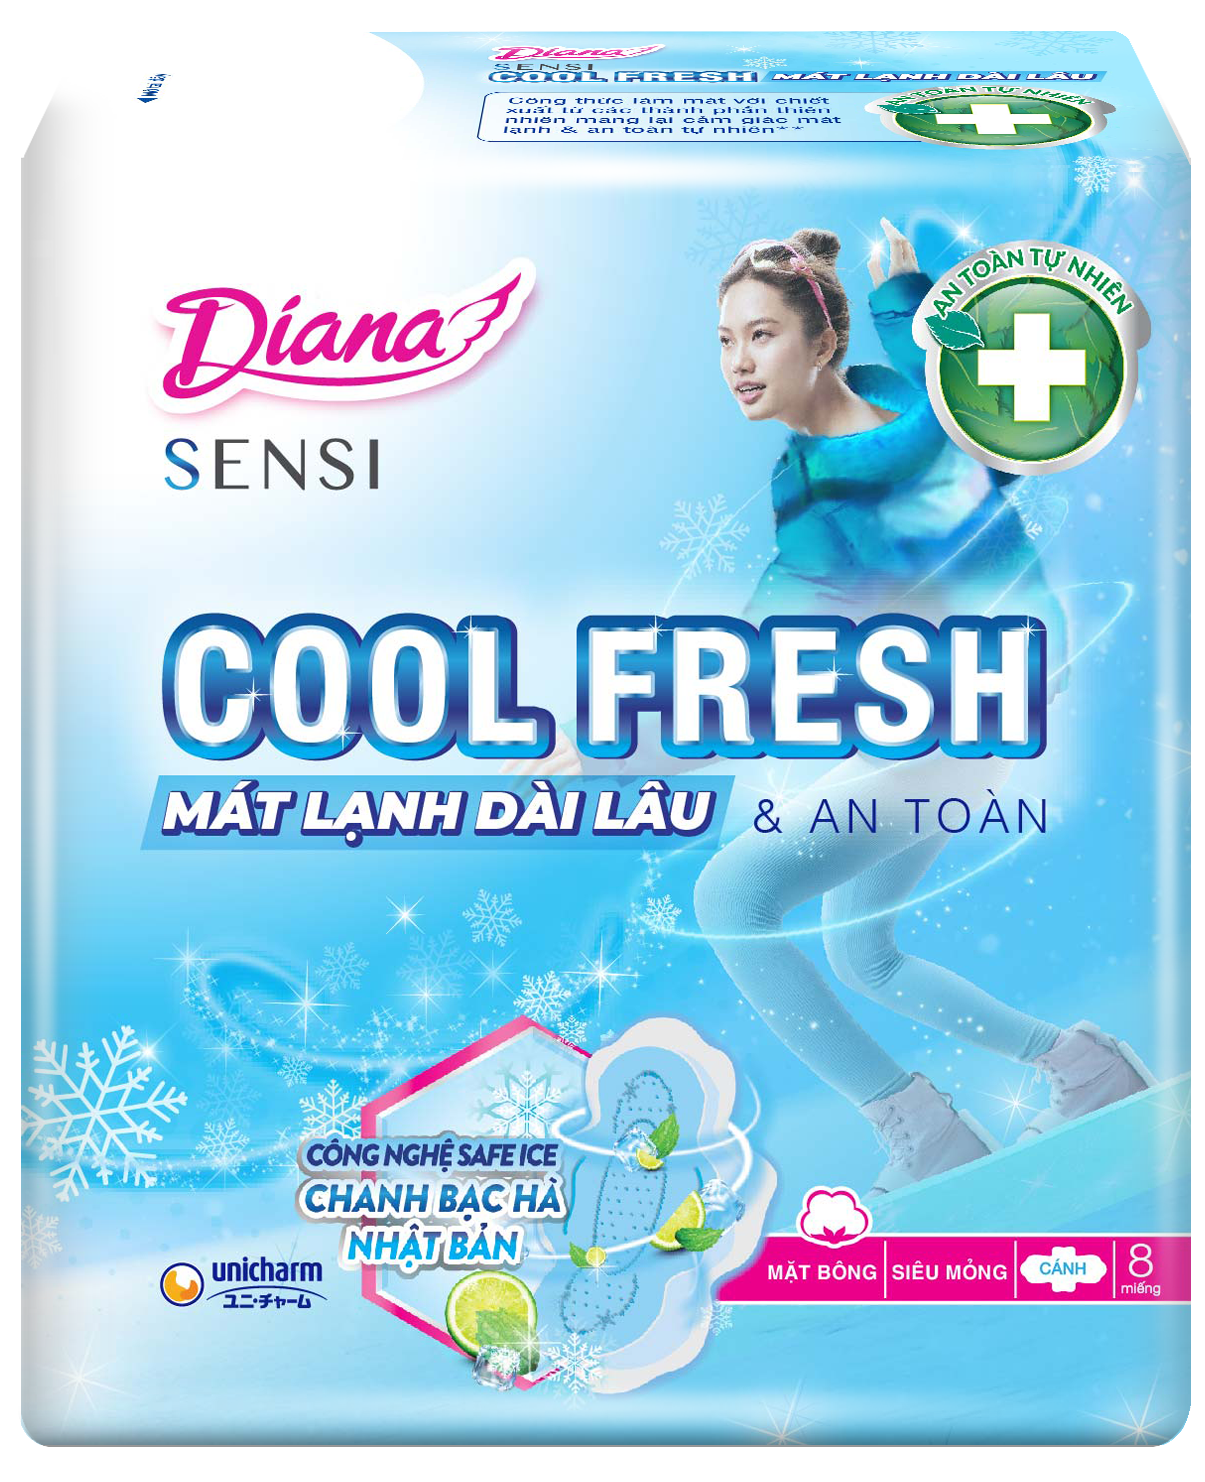 Diana SENSI Cool Fresh Mát Lạnh siêu mỏng cánh